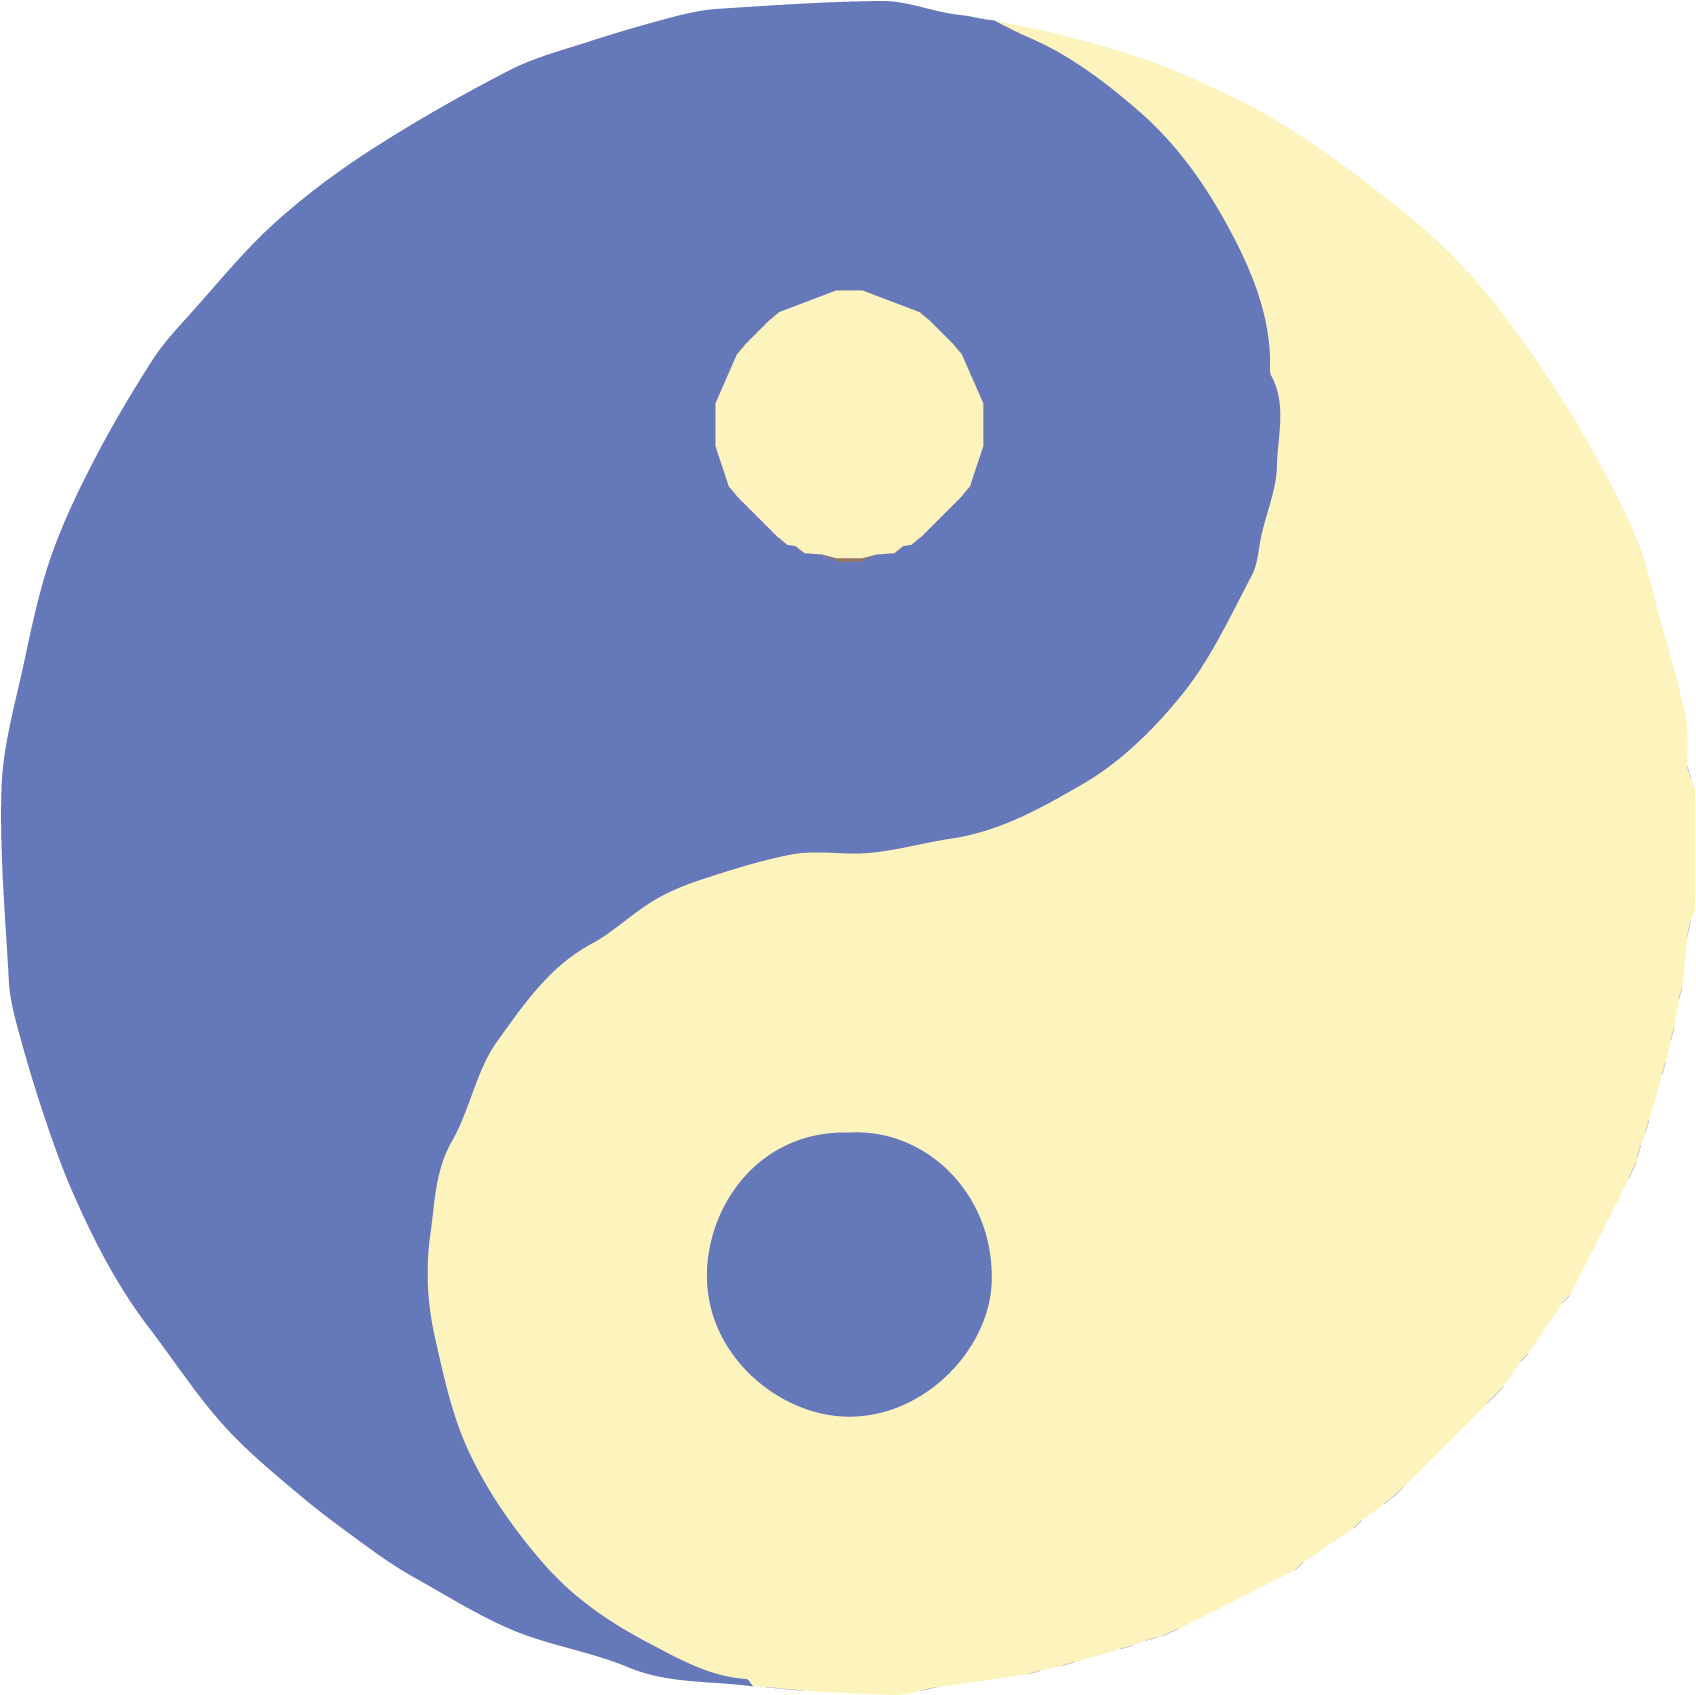 Yin-yang - Symbols Meaning (1879x1879)